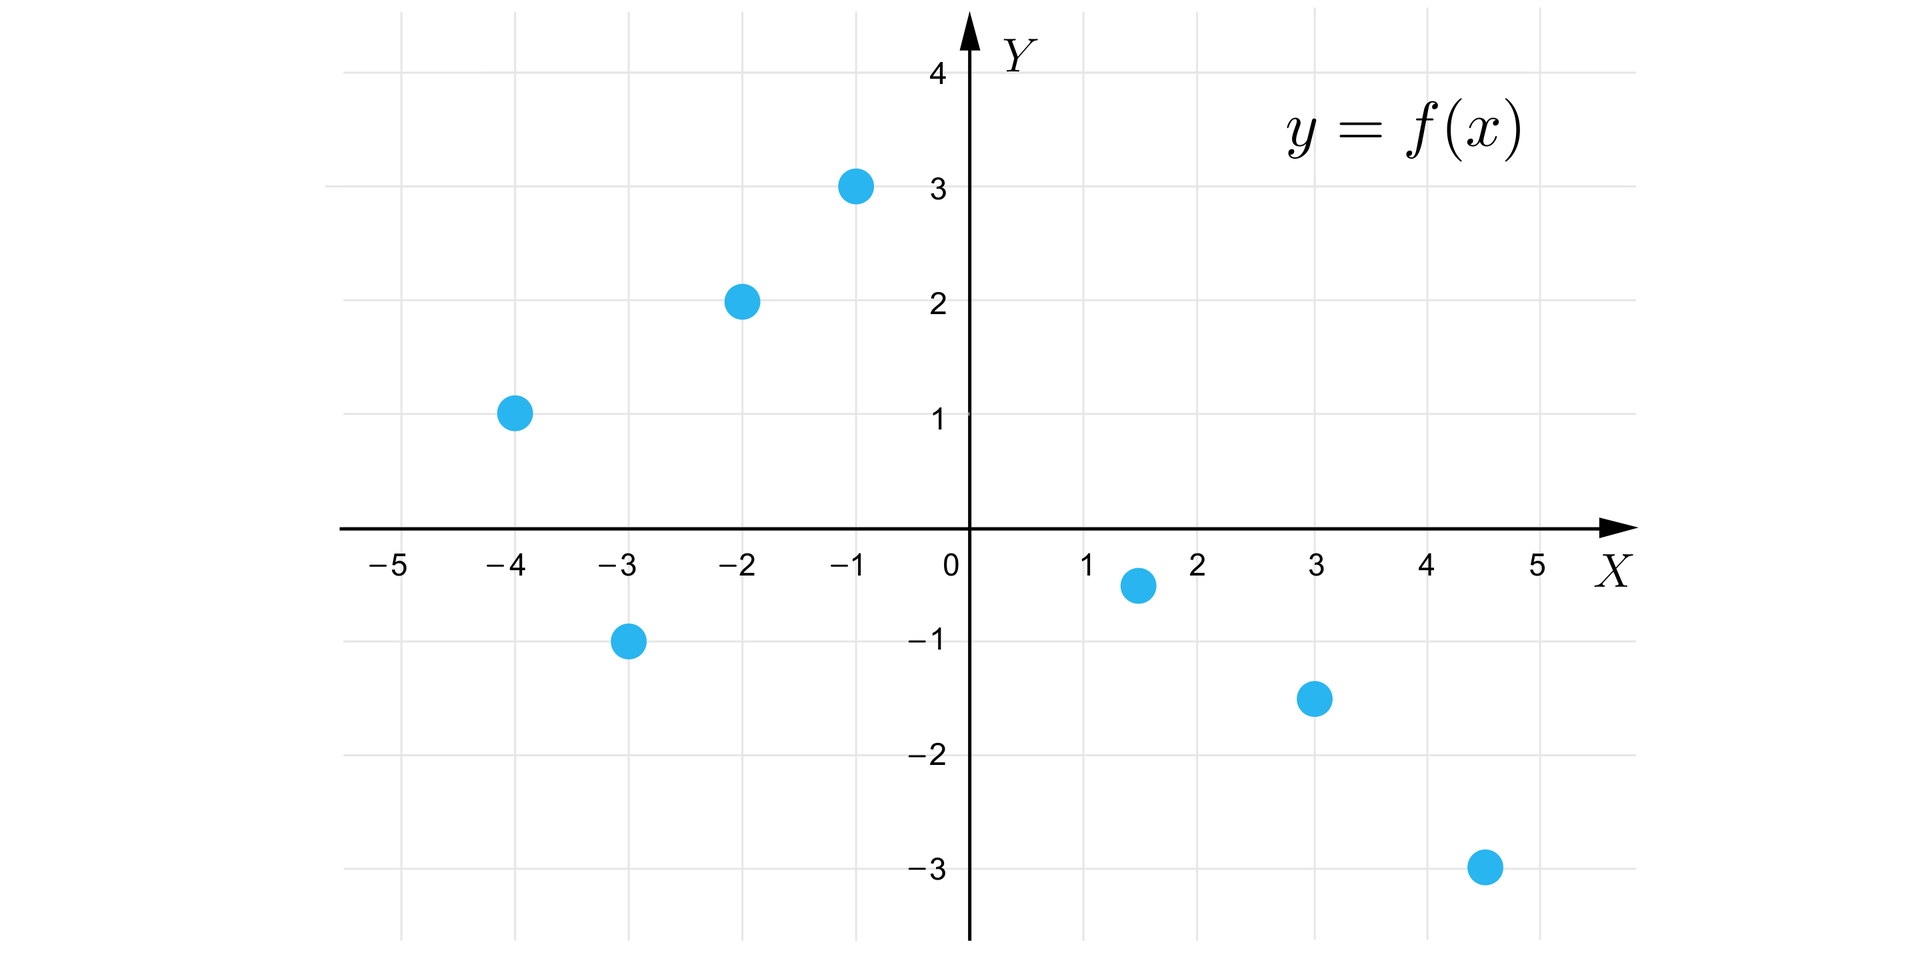 Grafika przedstawia układ współrzędnych z poziomą osią X od minus pięciu do pięciu oraz z pionową osią Y od minus trzech do czterech. Wykres składa się z siedmiu punktów o następujących współrzędnych: -4;1, -3;-1, -2;2, -1;3, 112;-12, 3;-112, 412;-3.